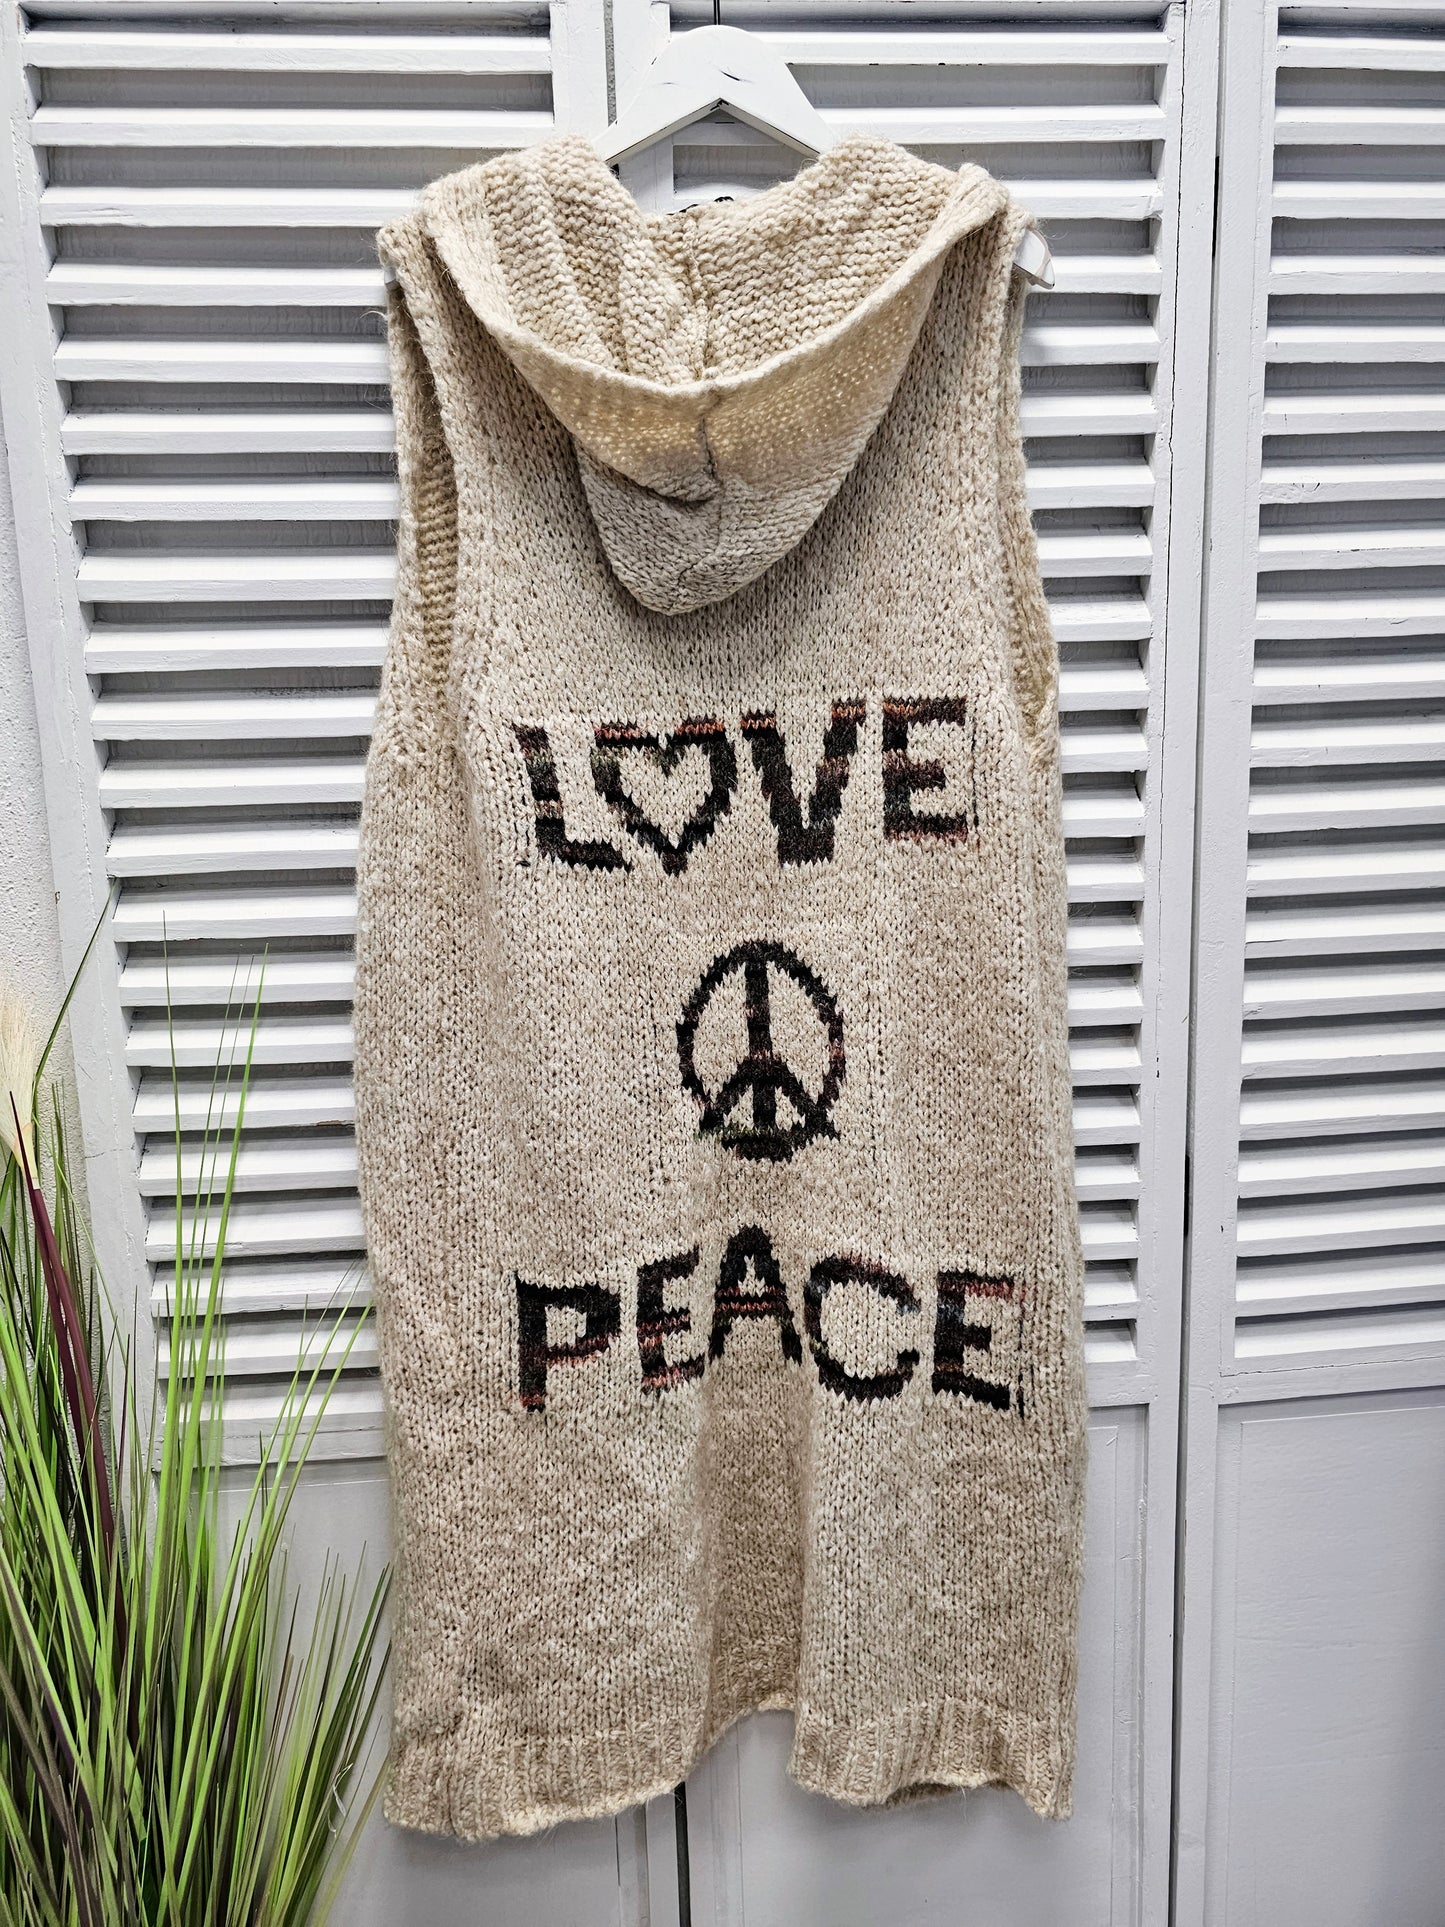 Lange ärmellose Strickweste mit Kapuze, Taschen und Love and Peace-Print auf dem Rücken